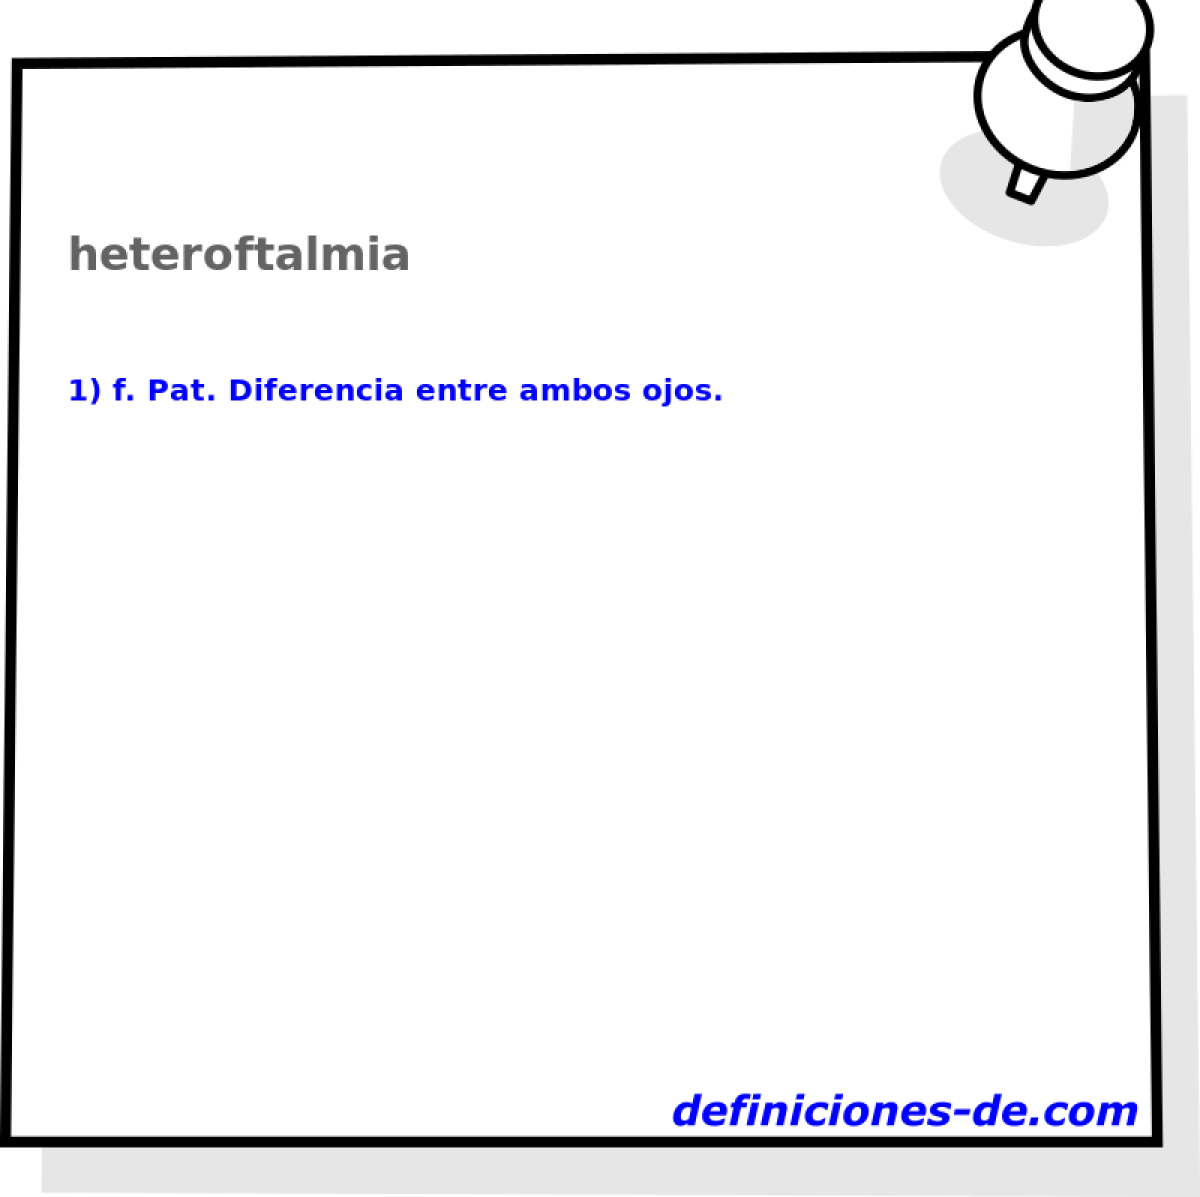 heteroftalmia 